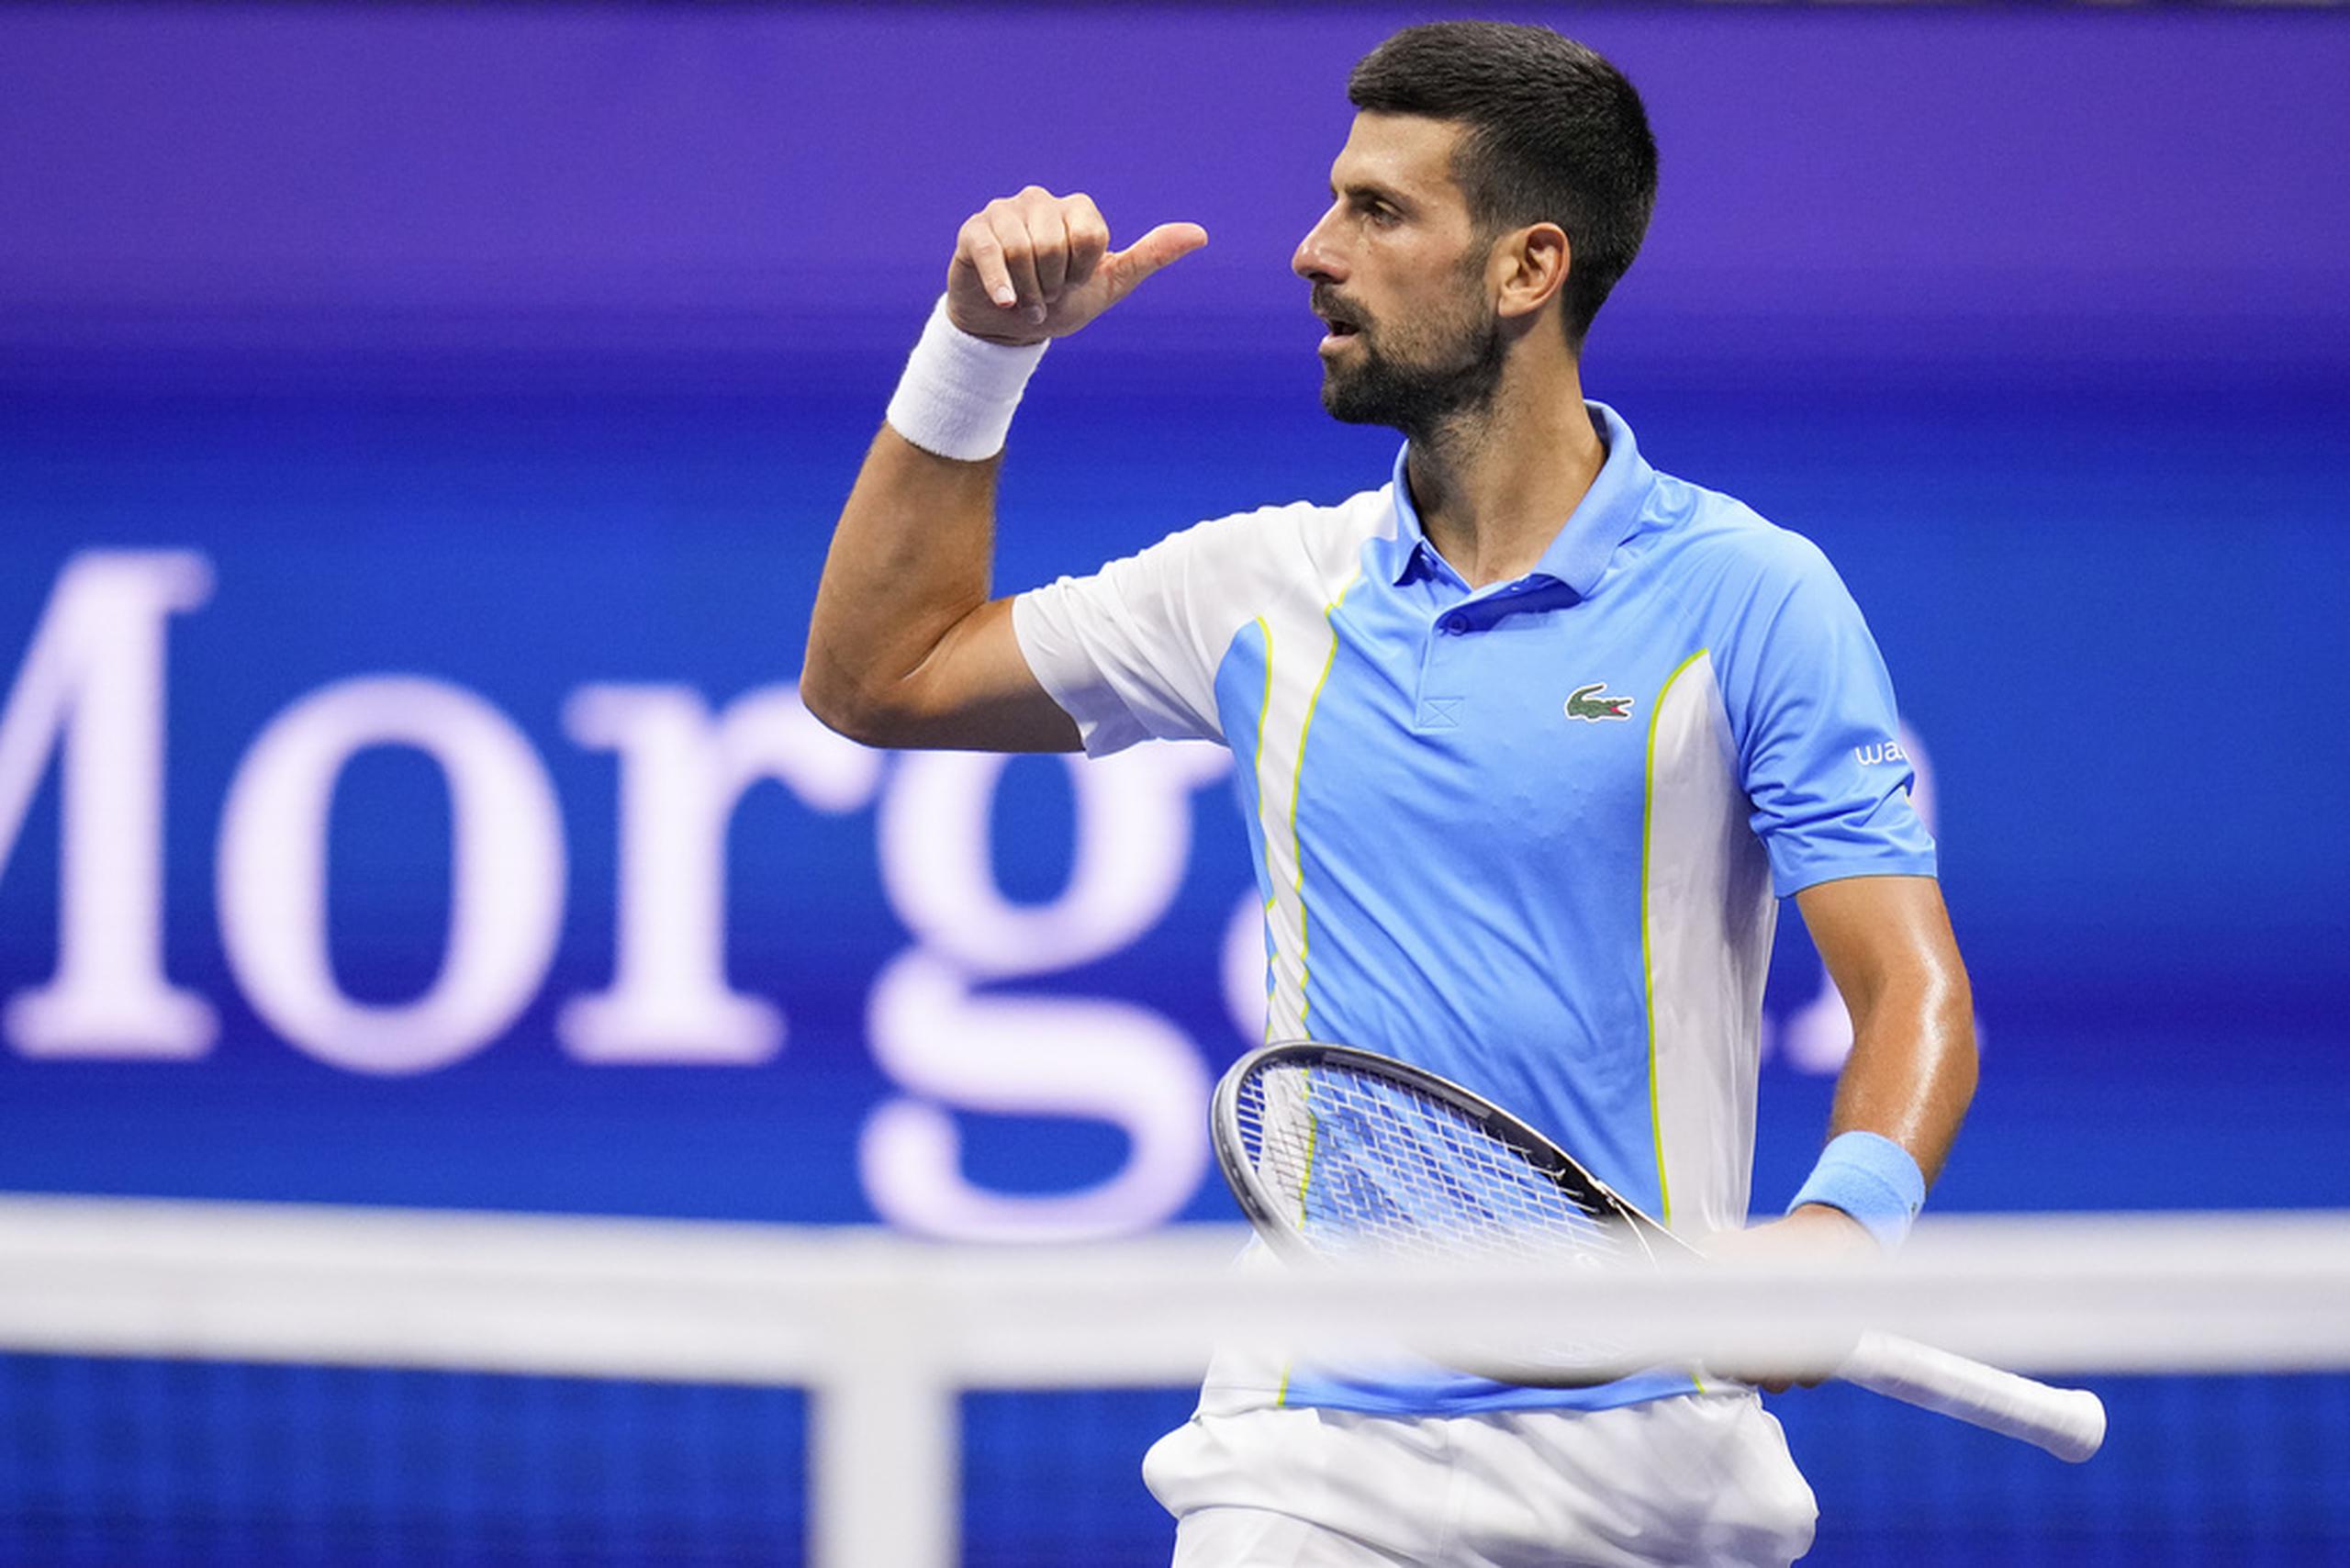 El serbio Novak Djokovic reacciona tras derrotar a Ben Shelton en las semifinales del US Open.